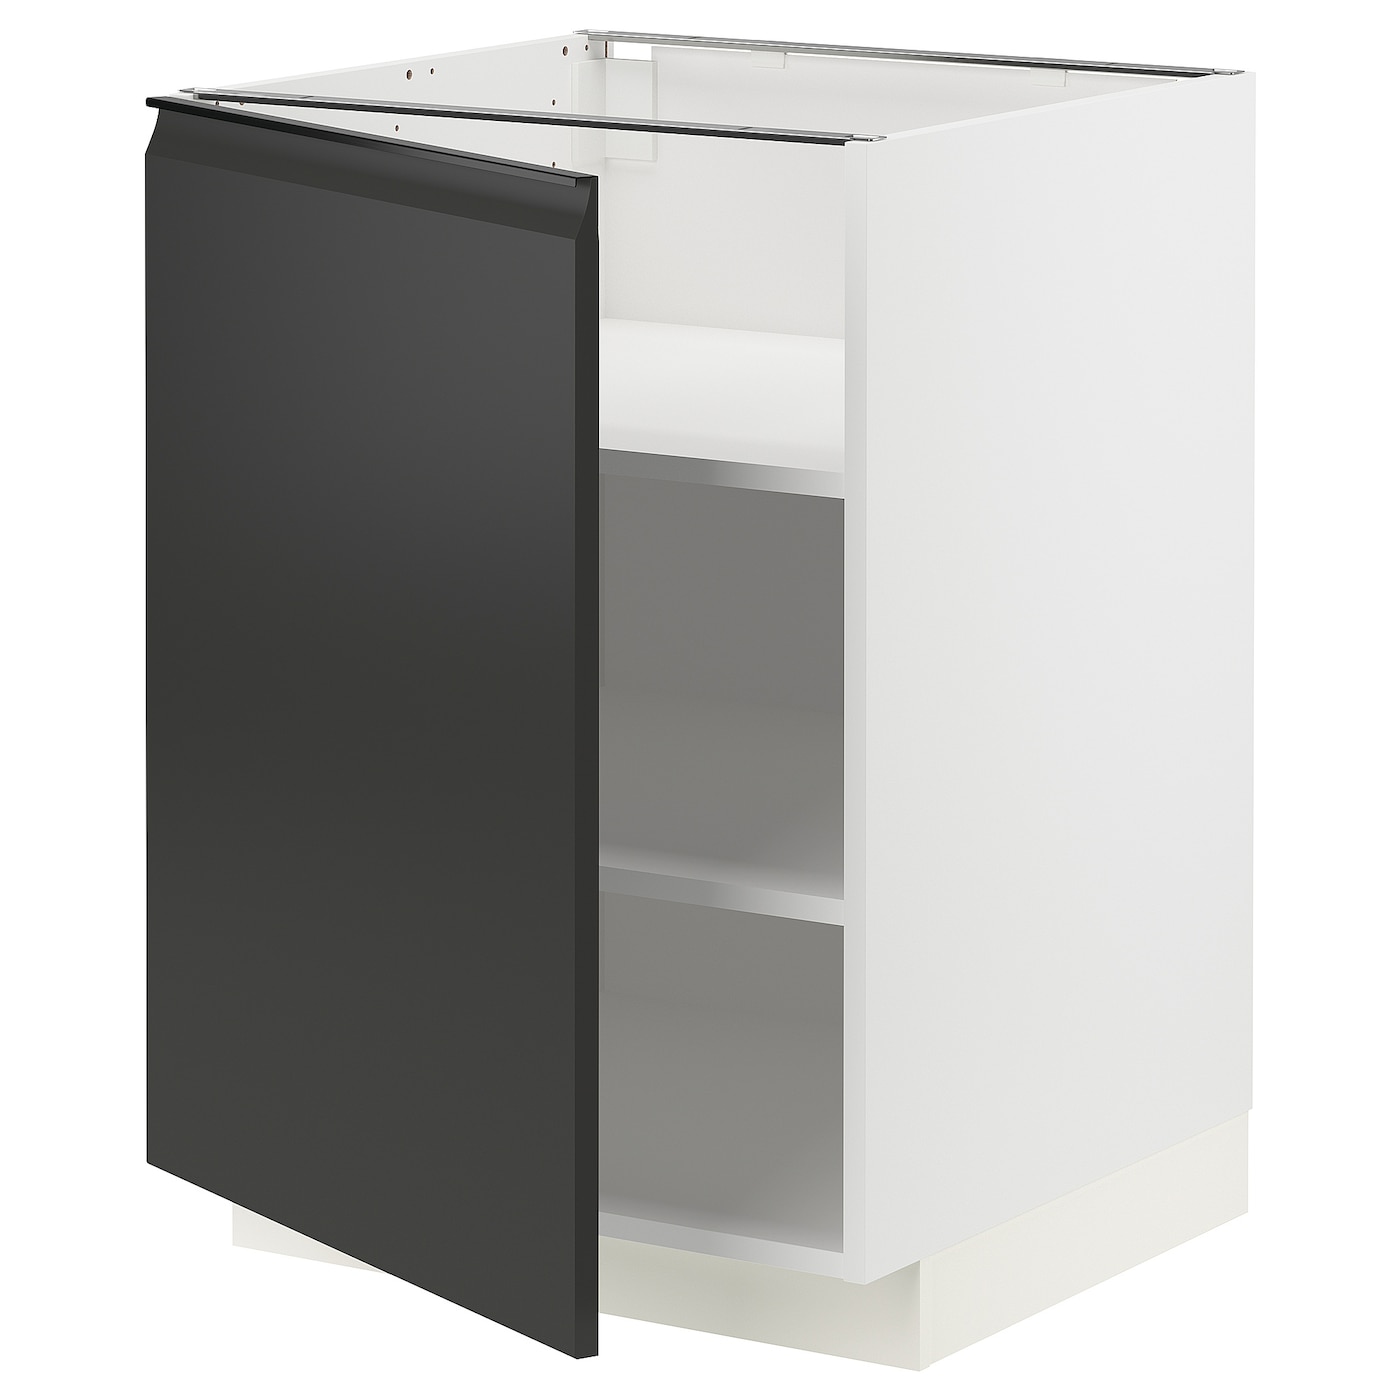 Напольный шкаф - IKEA METOD, 88x62x60см, белый/черный, МЕТОД ИКЕА